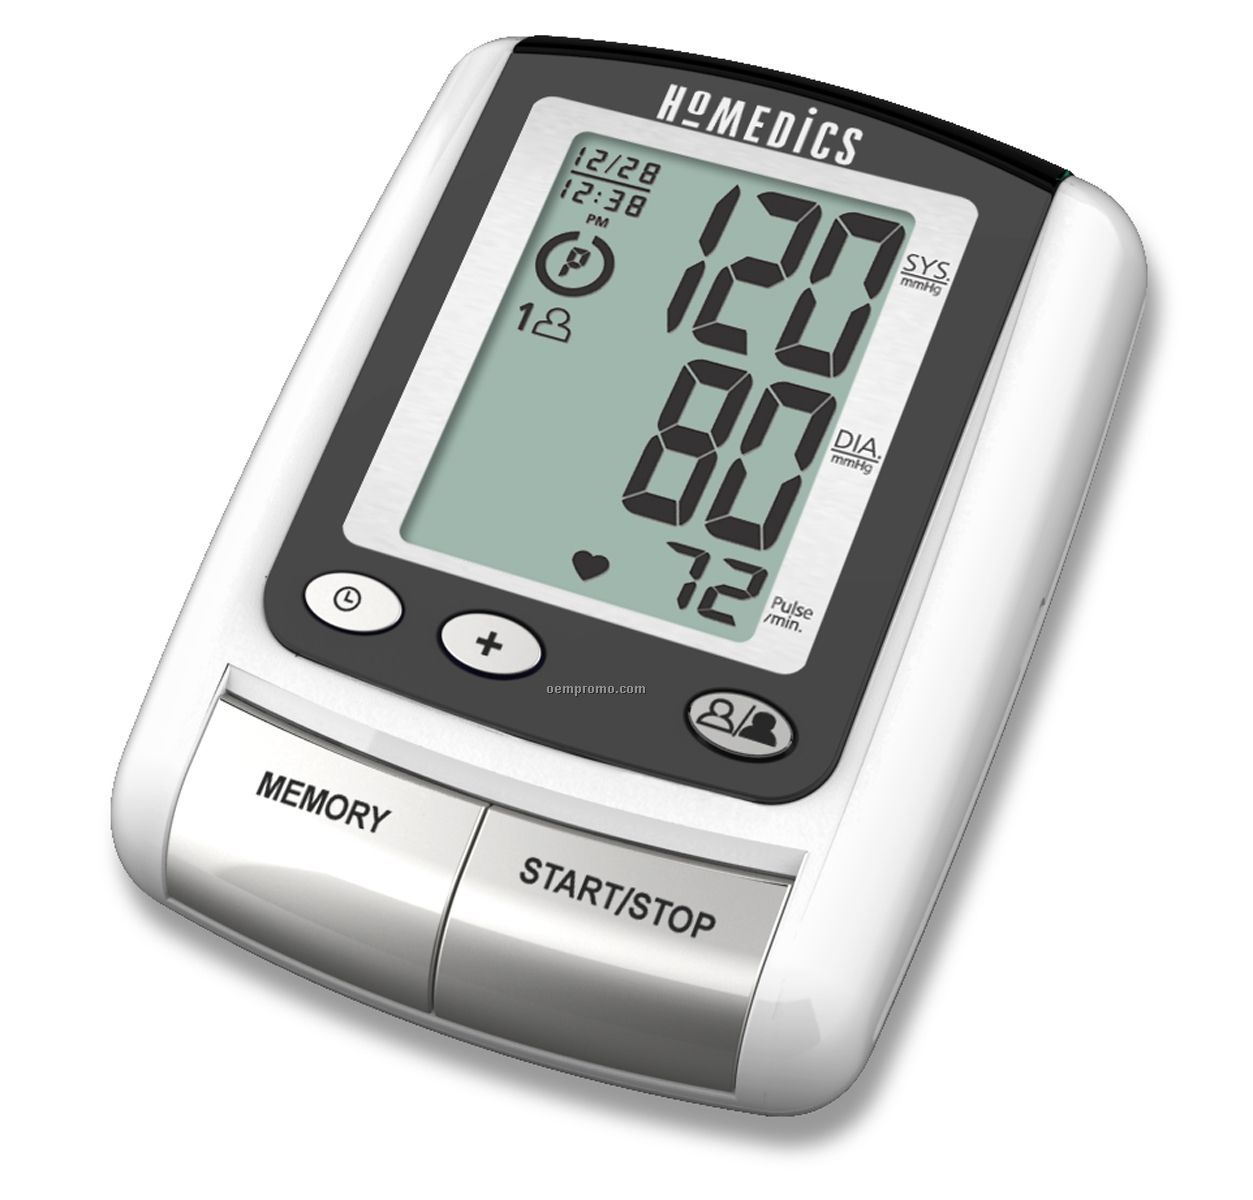 Homedics Automatic Blood Pressure Monitor